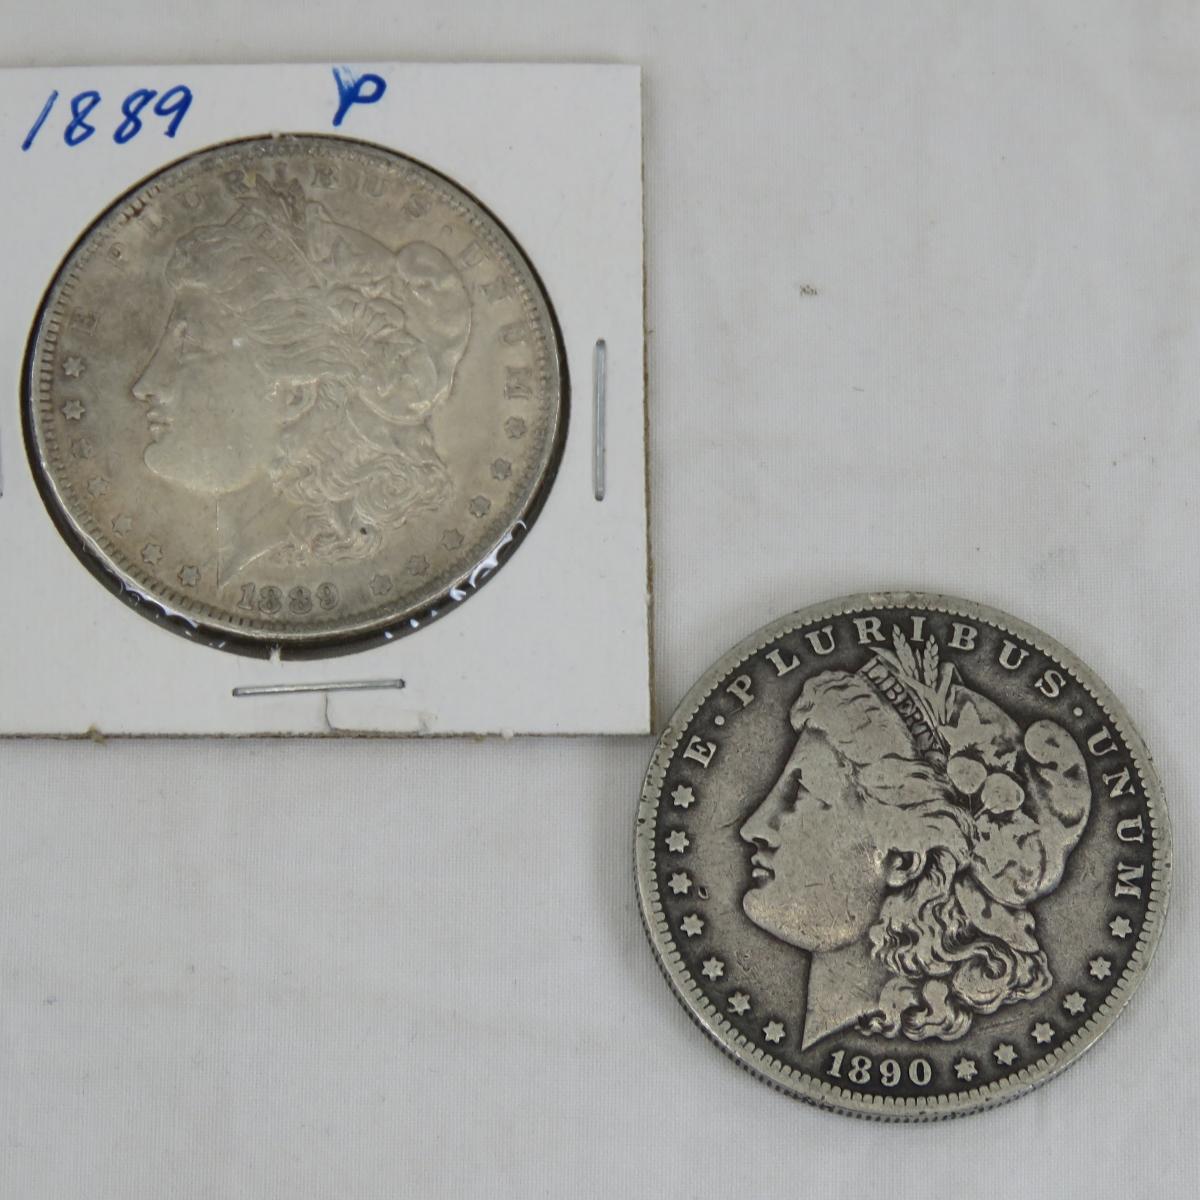 1889 & 1890 O Morgan Silver Dollars